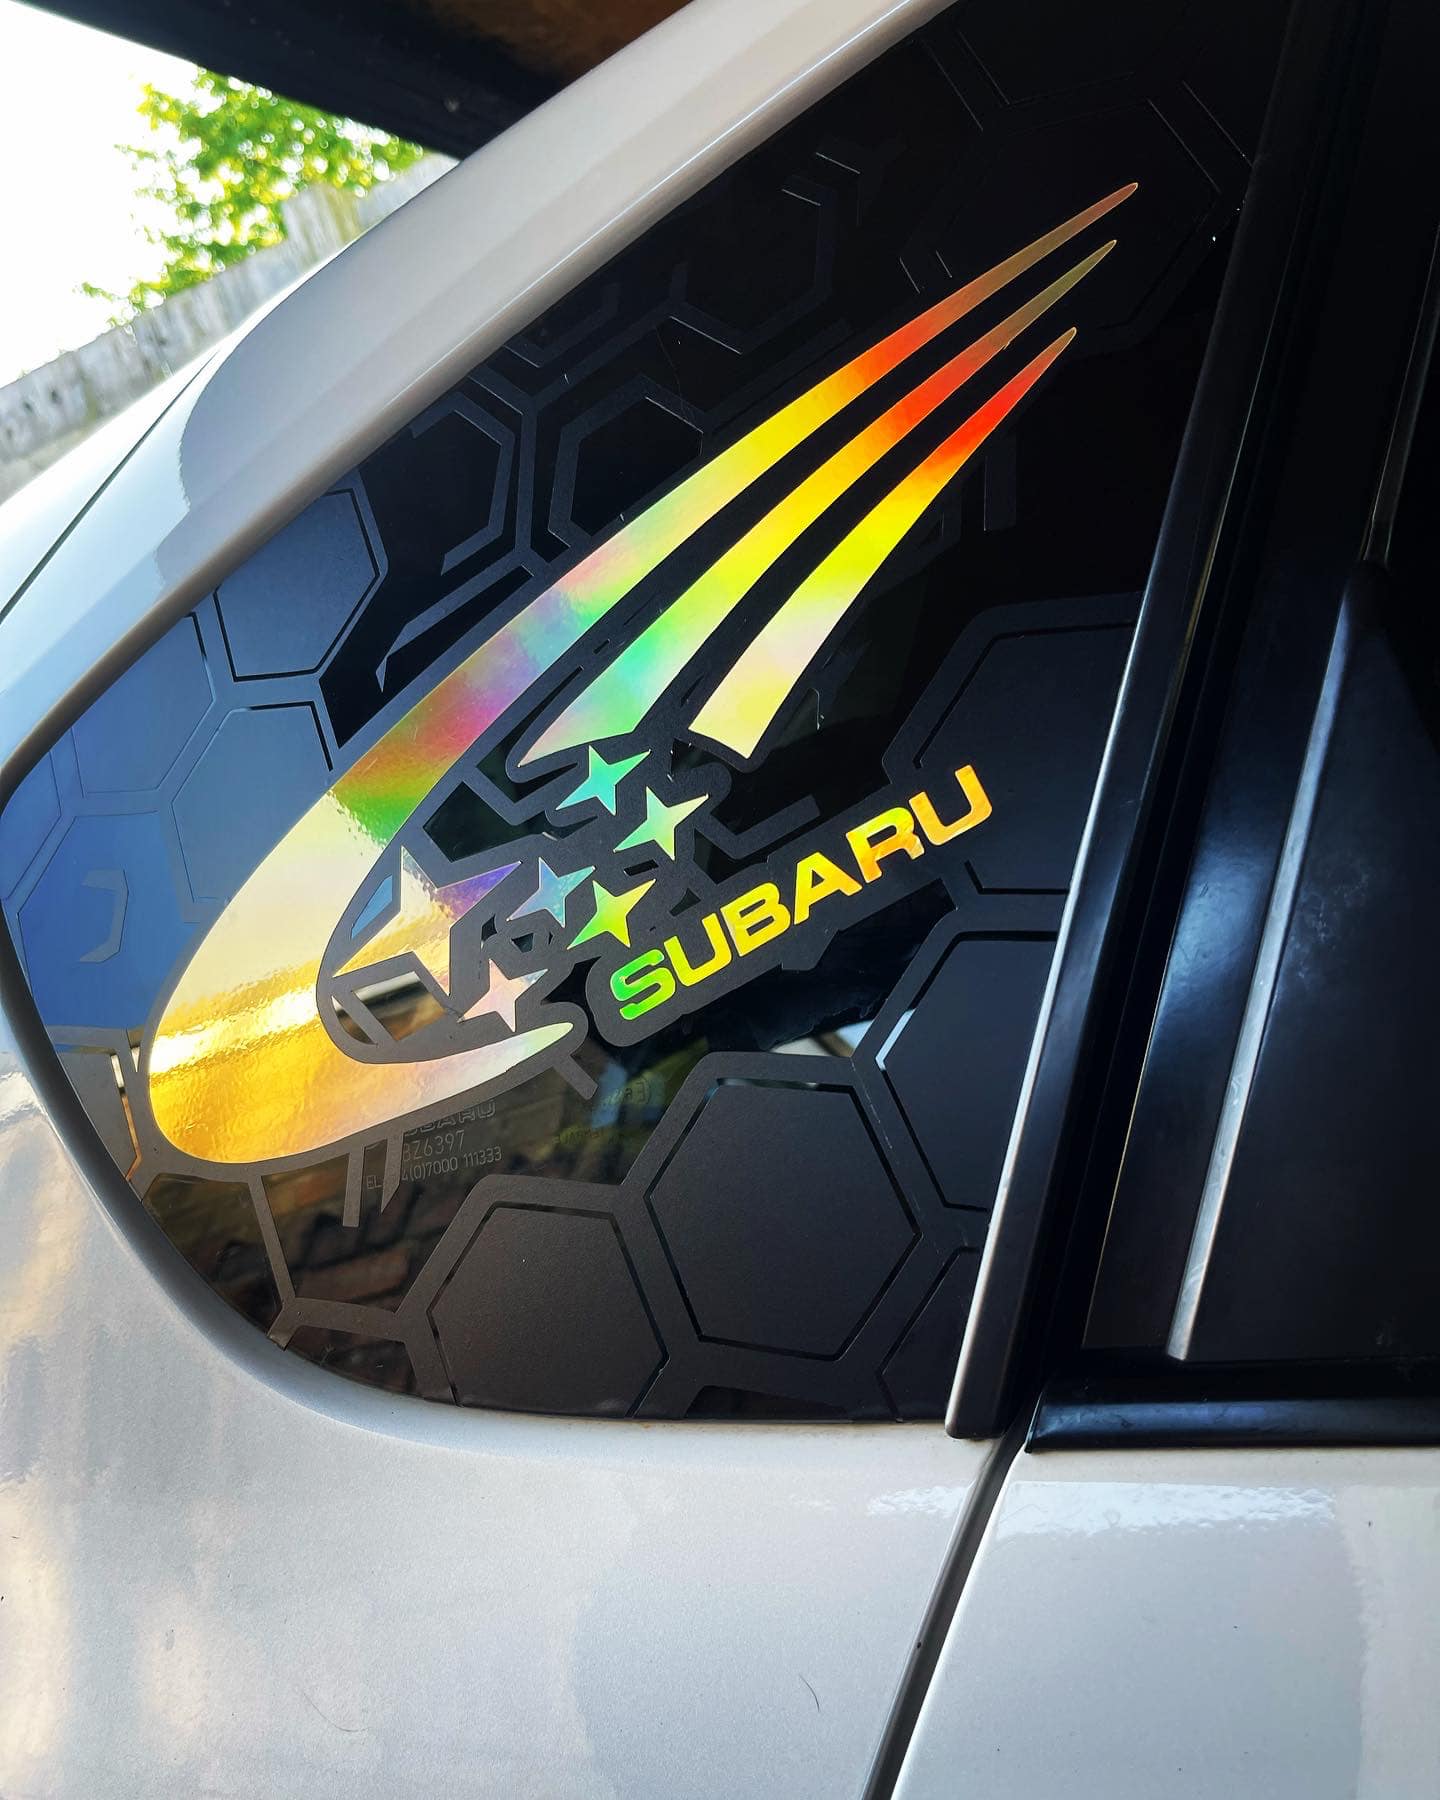 Subaru Impreza Honeycomb Side Window Stickers